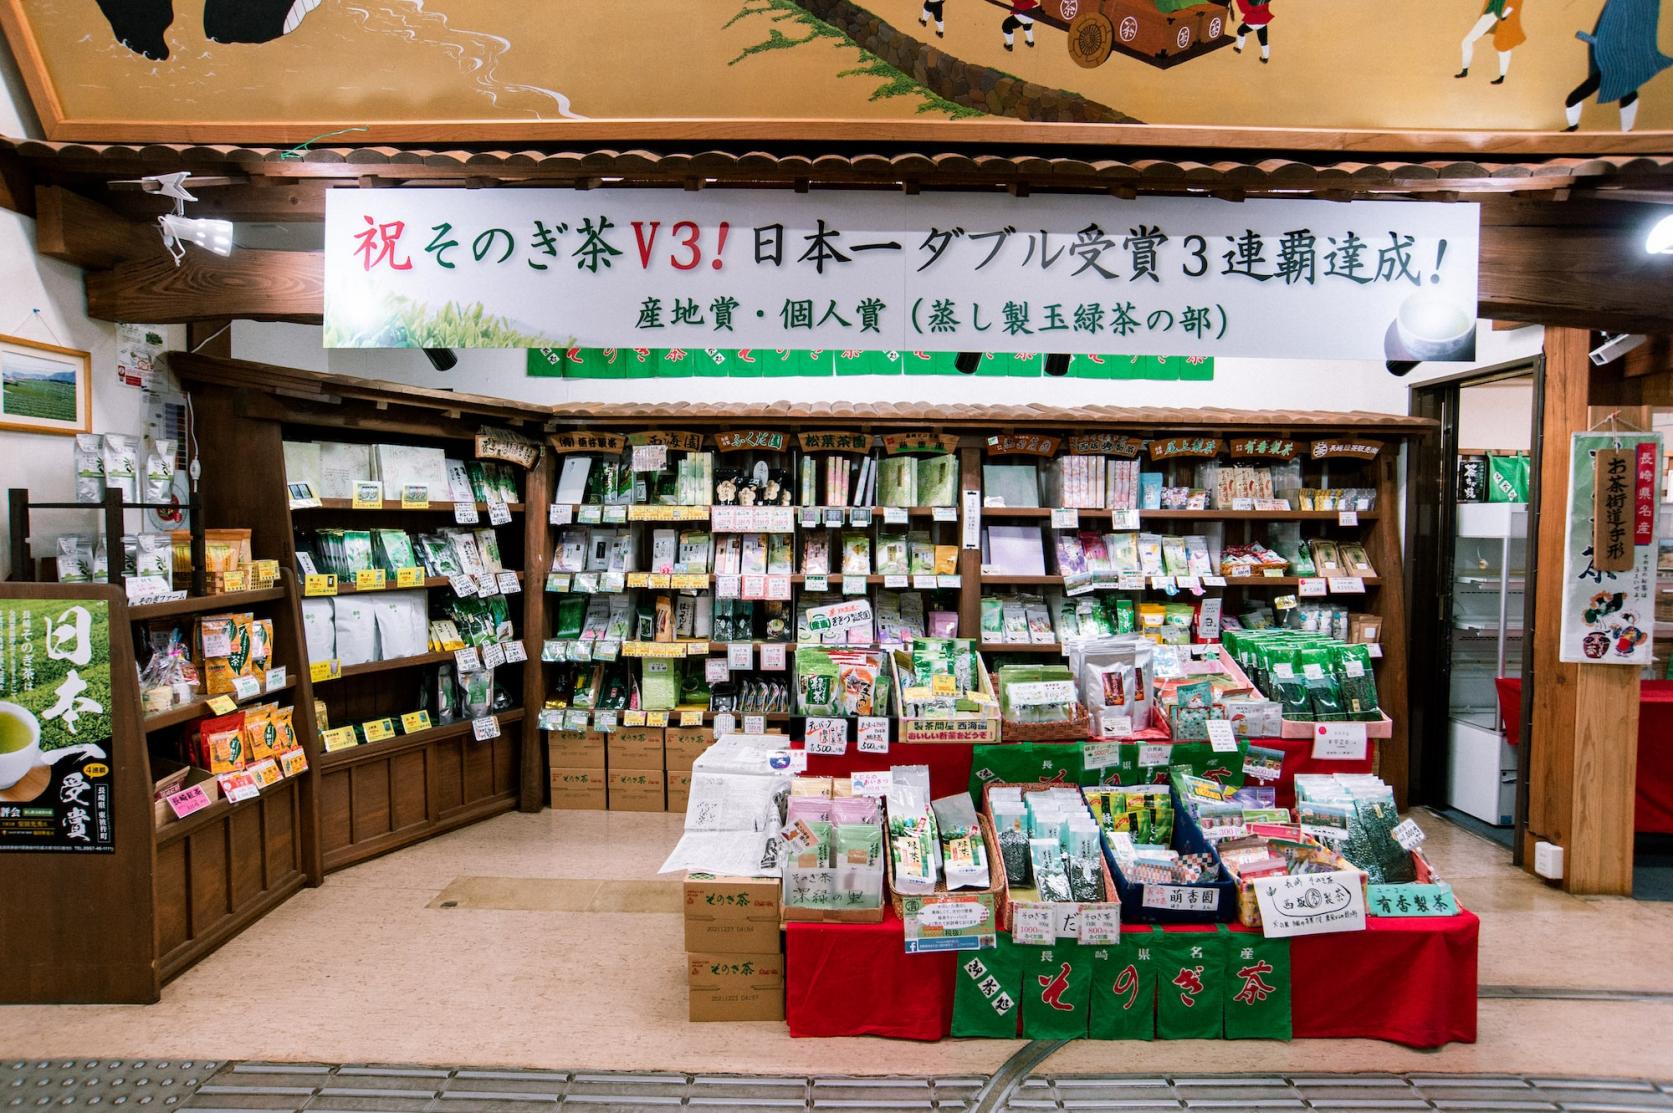 Souvenir Shopping at Michi-no-Eki, Sonogi-no-Sho-1